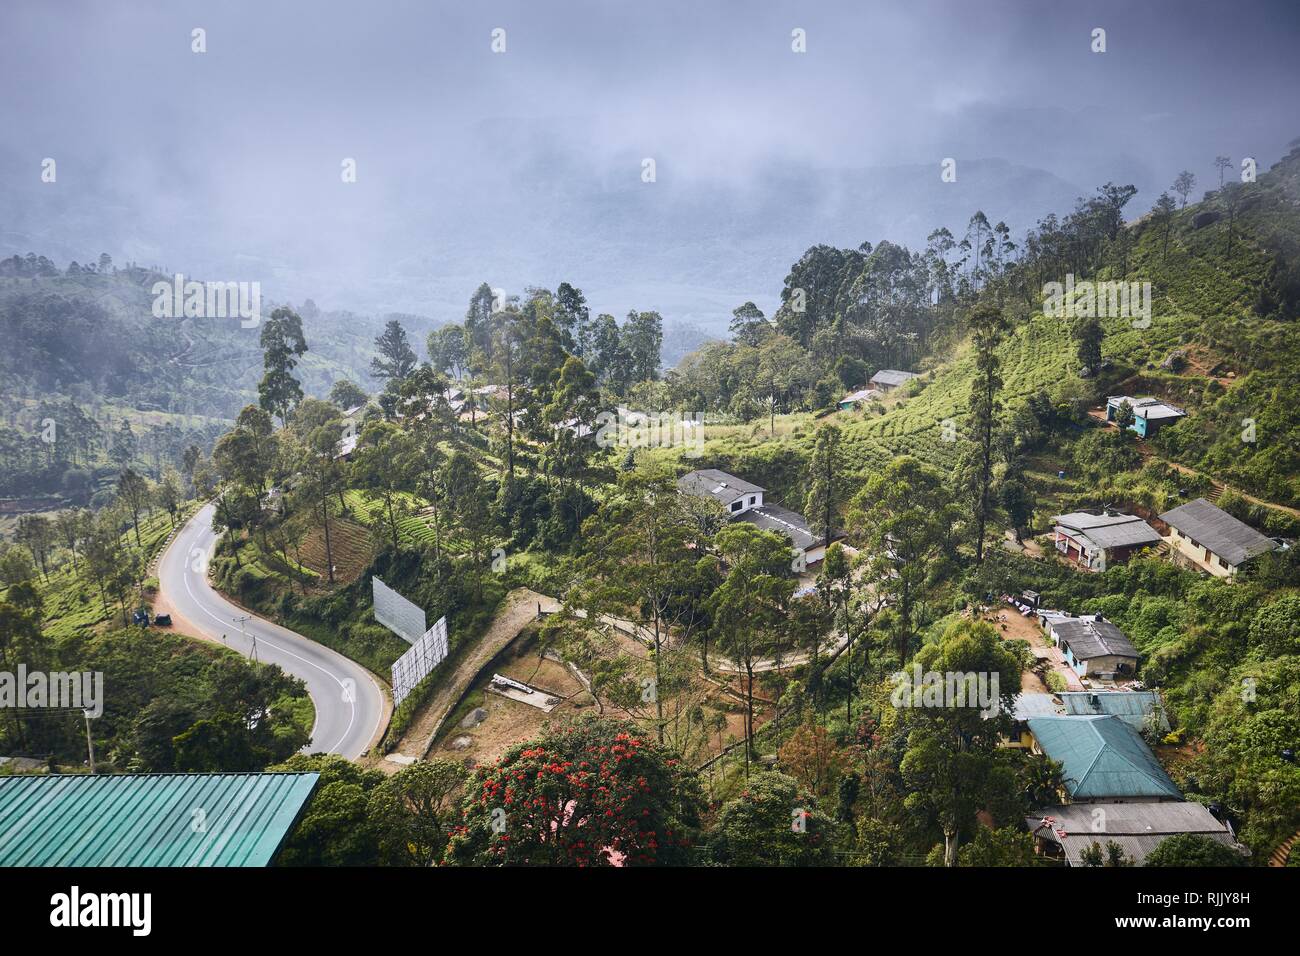 Ville au milieu de plantations de thé. Paysage dans les nuages. Haputale, Sri Lanka Banque D'Images